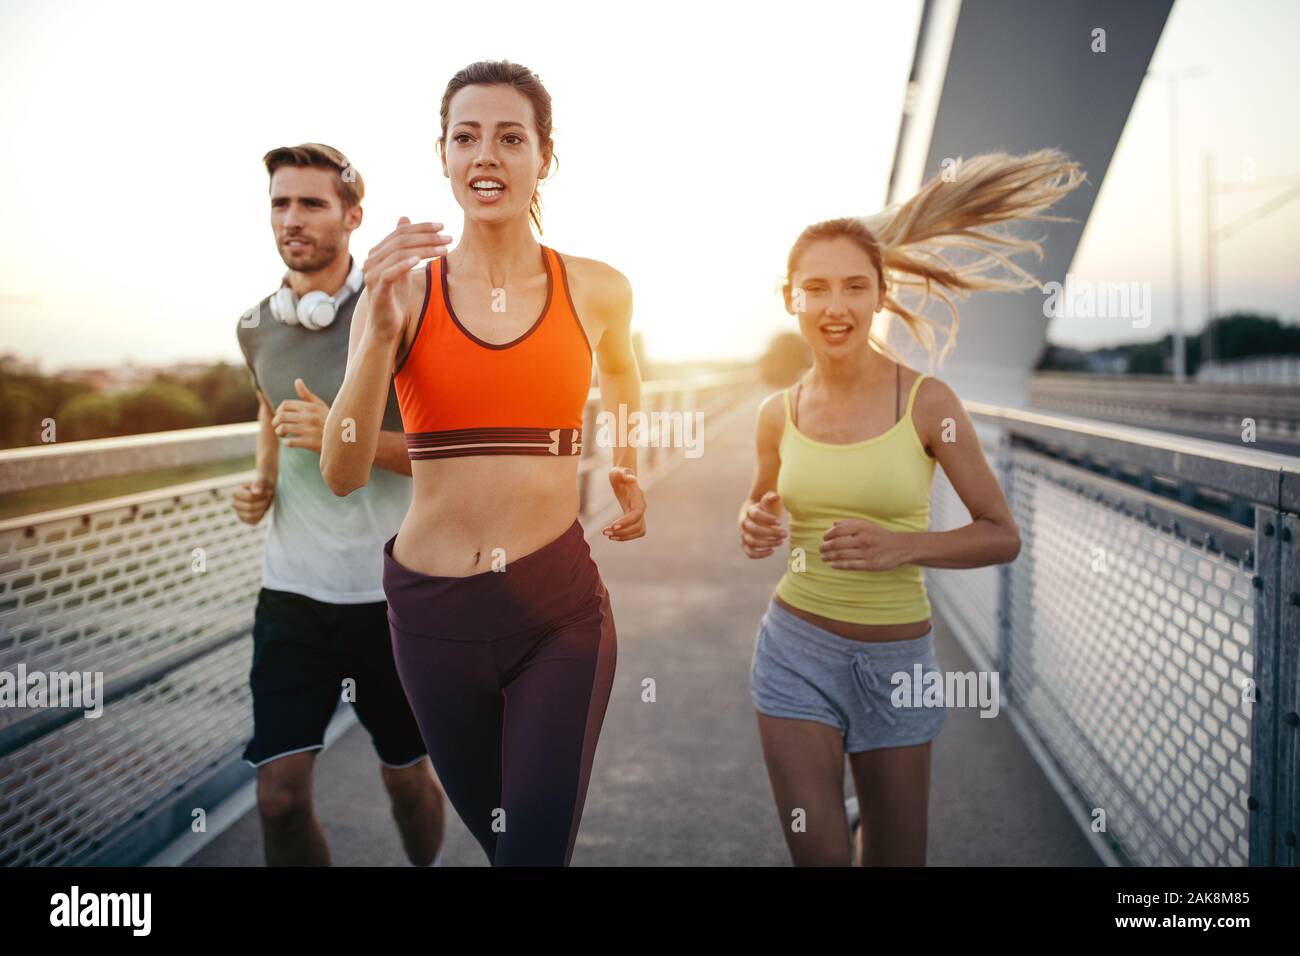 Athletische Passform Freunde trainieren und Joggen gemeinsam im Freien. Sport, Freunde, Gesundheit Konzept Stockfoto